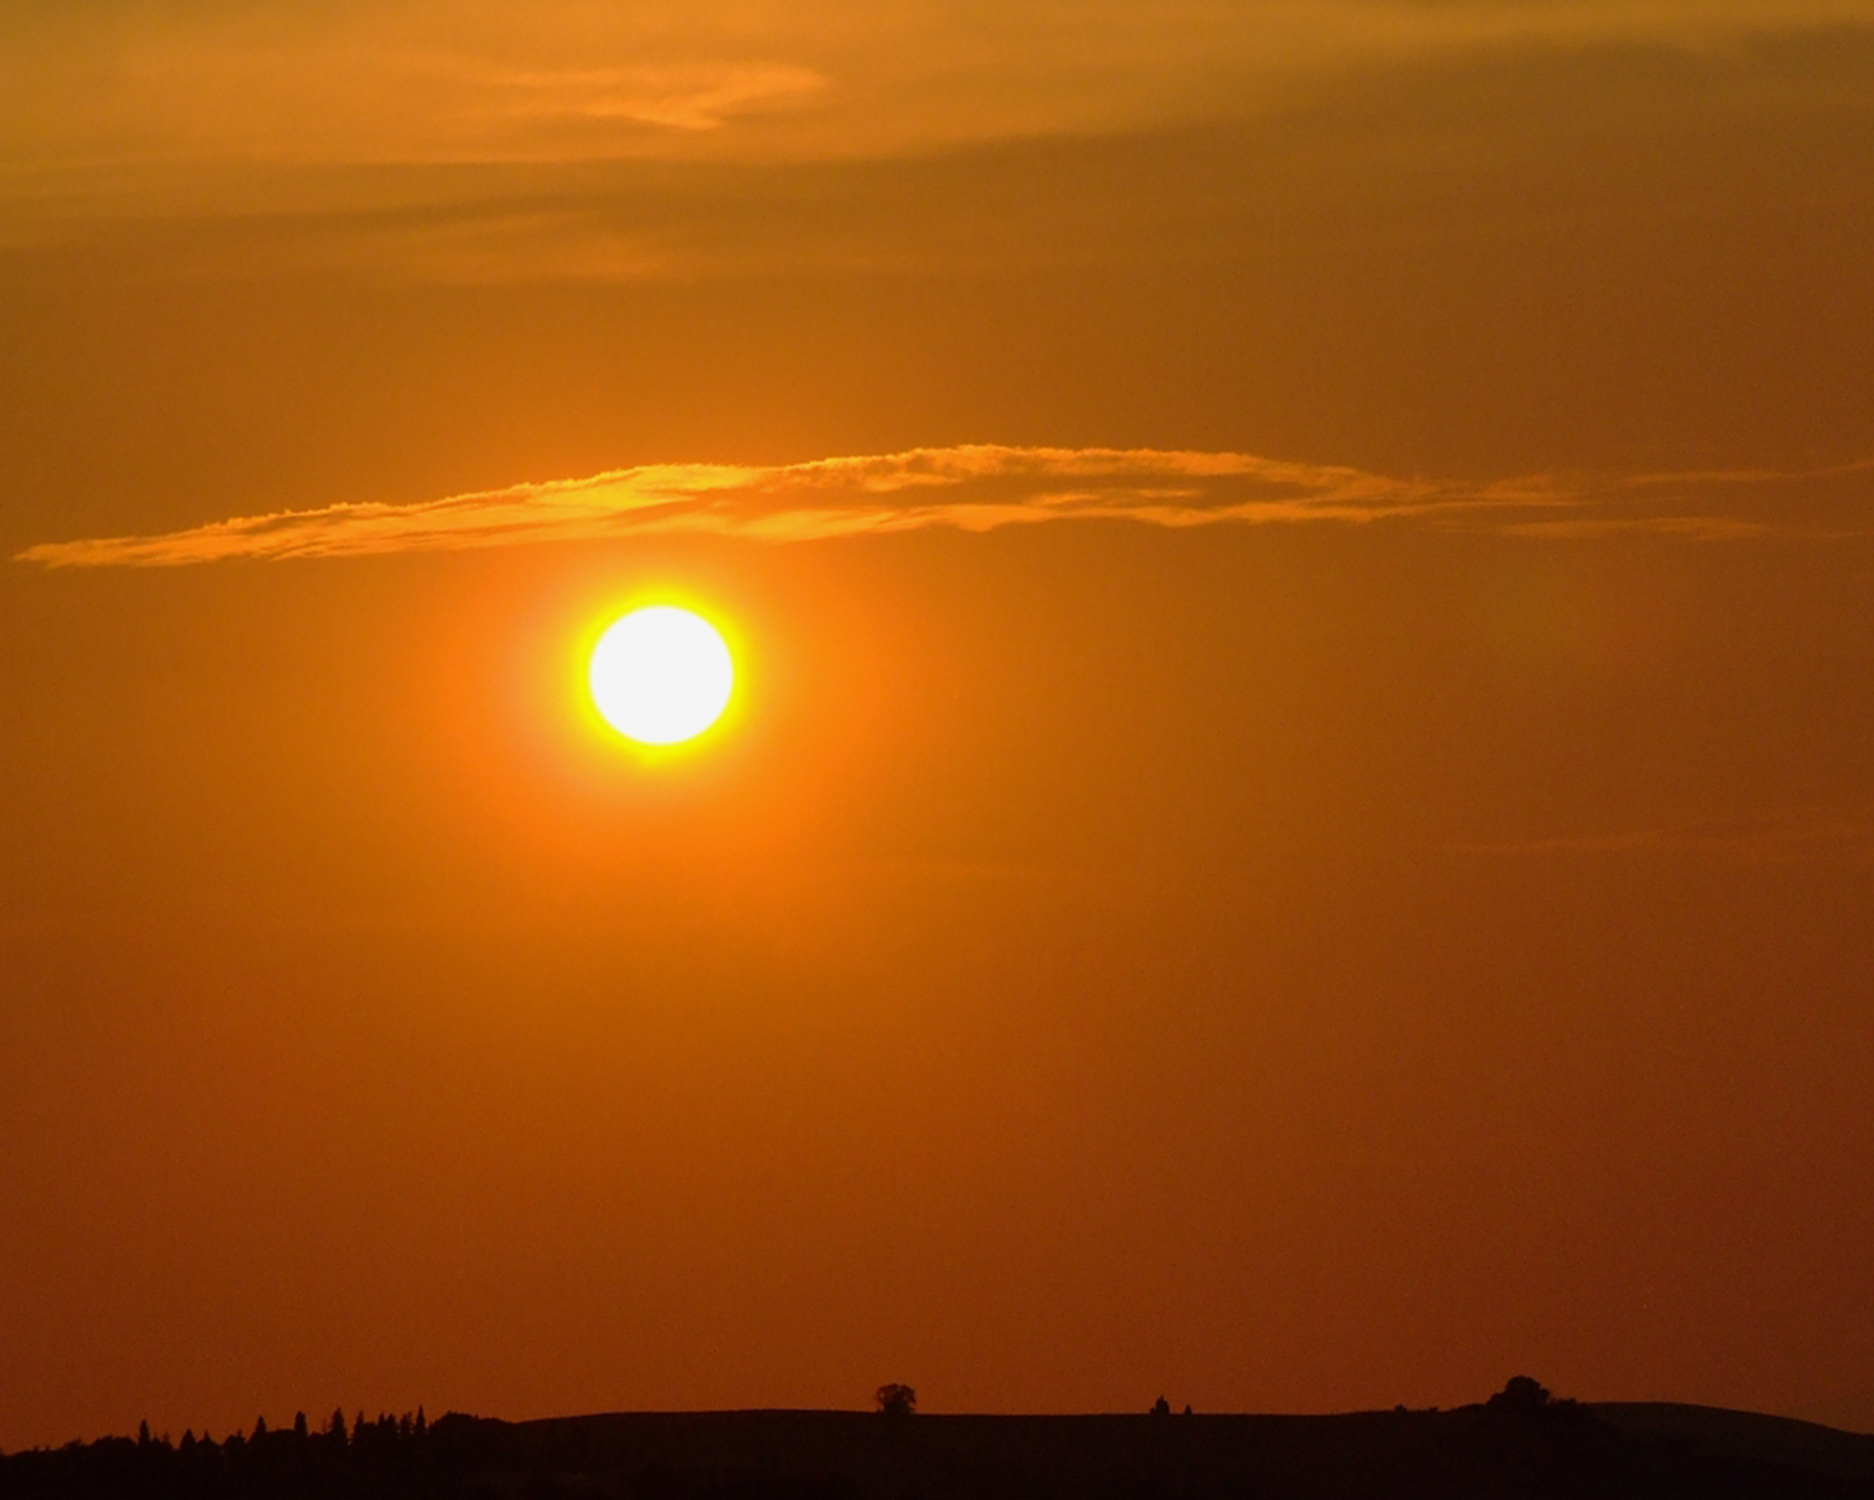 DSCF9361 - tramonto toscano.jpg